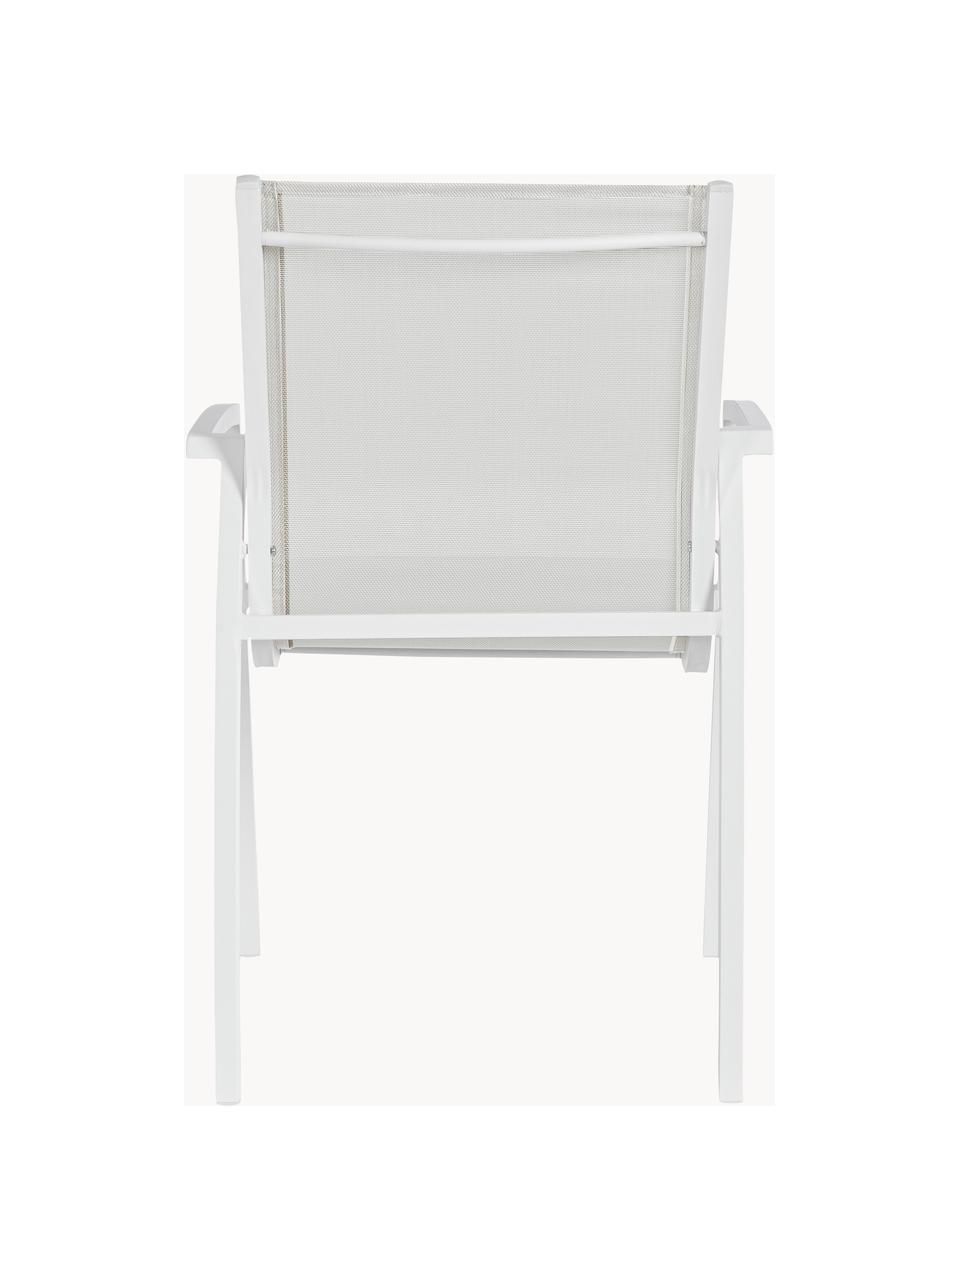 Gartenstuhl Hilla, Sitzfläche: Kunststoff, Gestell: Aluminium, pulverbeschich, Greige, Weiß, B 57 x T 61 cm